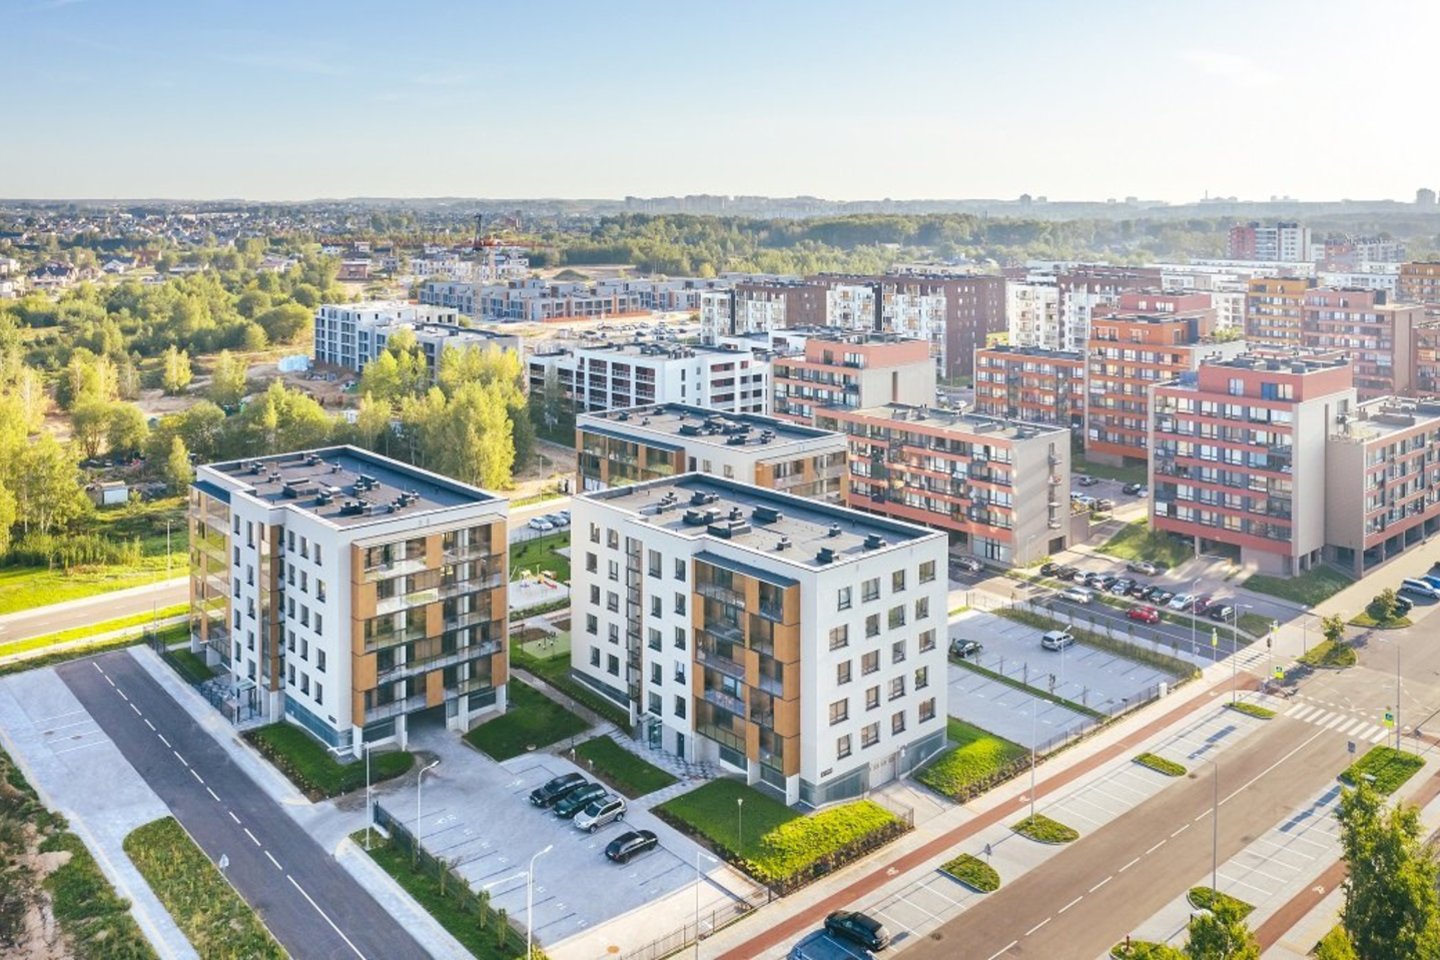 Sparčiai augančioje Pilaitėje jau užbaigtas antrasis „Martyno namų“ projekto etapas bei pradėti trečiojo etapo butų pardavimai.